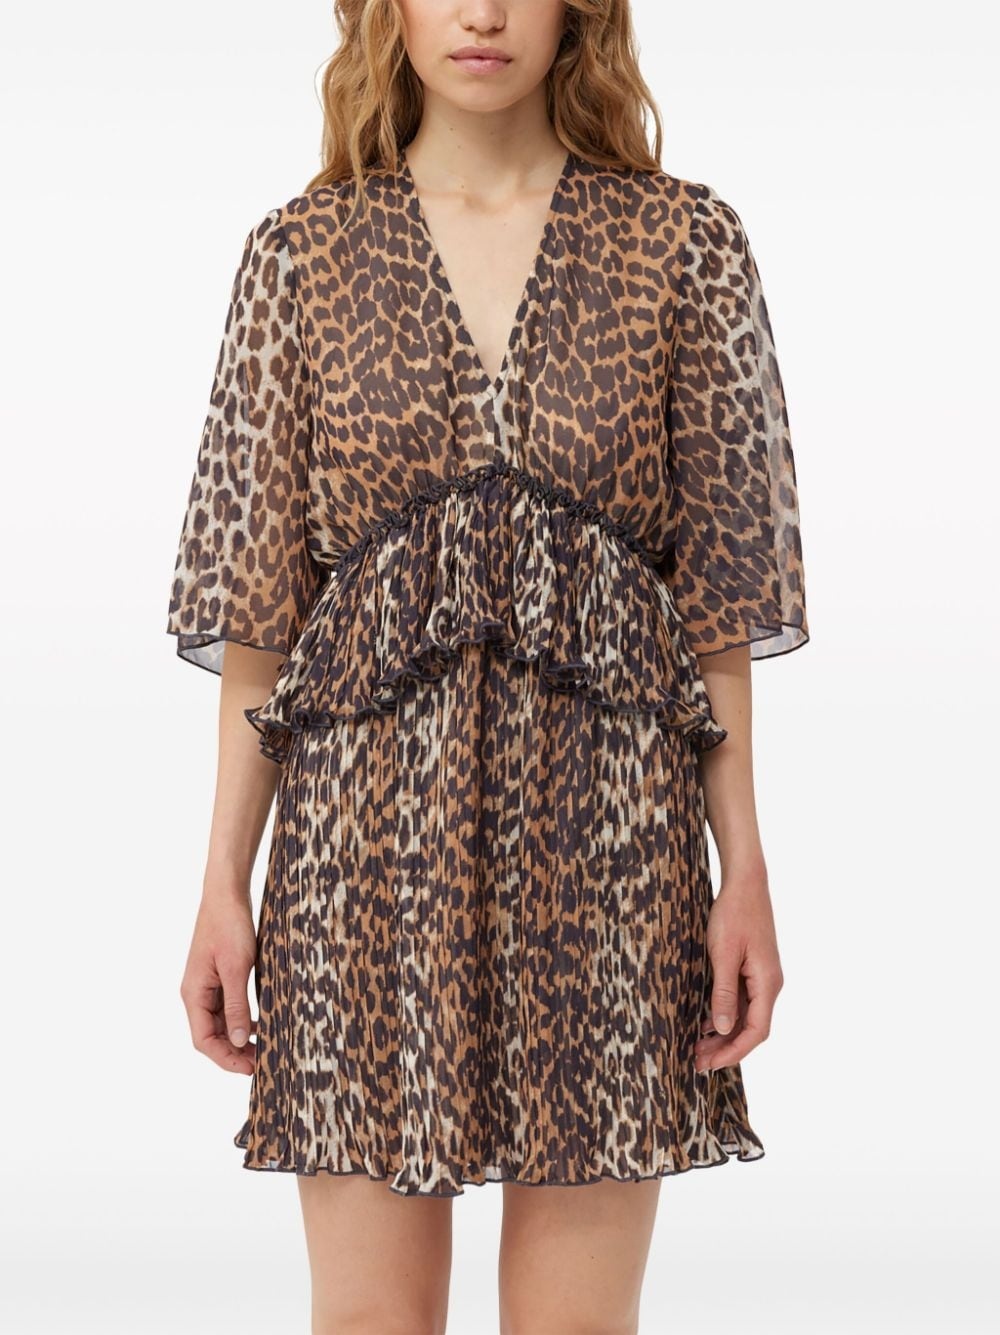 leopard-print georgette minidress - 5